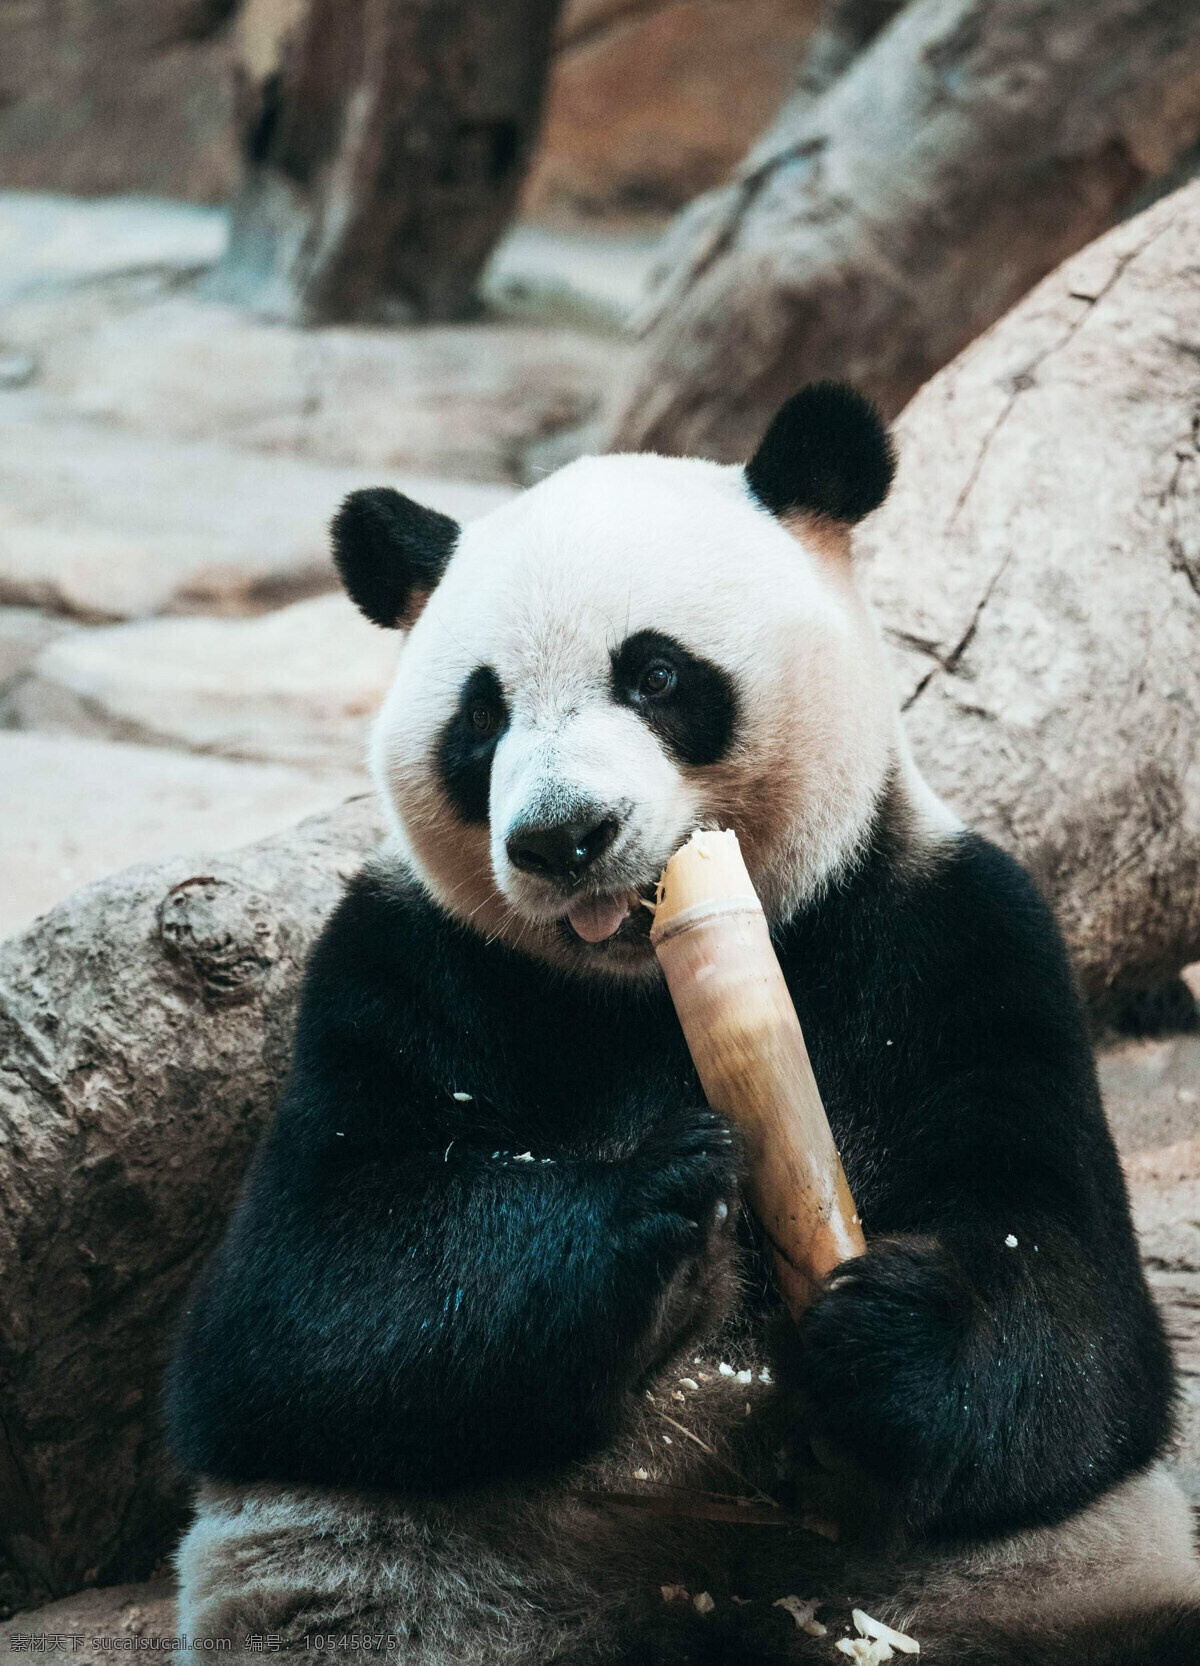 可爱 大熊猫 猫宝宝 可爱大熊猫 功夫熊猫 呆萌可爱熊猫 熊猫吃竹子 熊猫爬树 小熊猫 熊猫玩耍 国宝熊猫 草坪 熊猫 黑白 草地 哺乳 动物 野生 关注濒危 珍稀野生 生物世界 野生动物